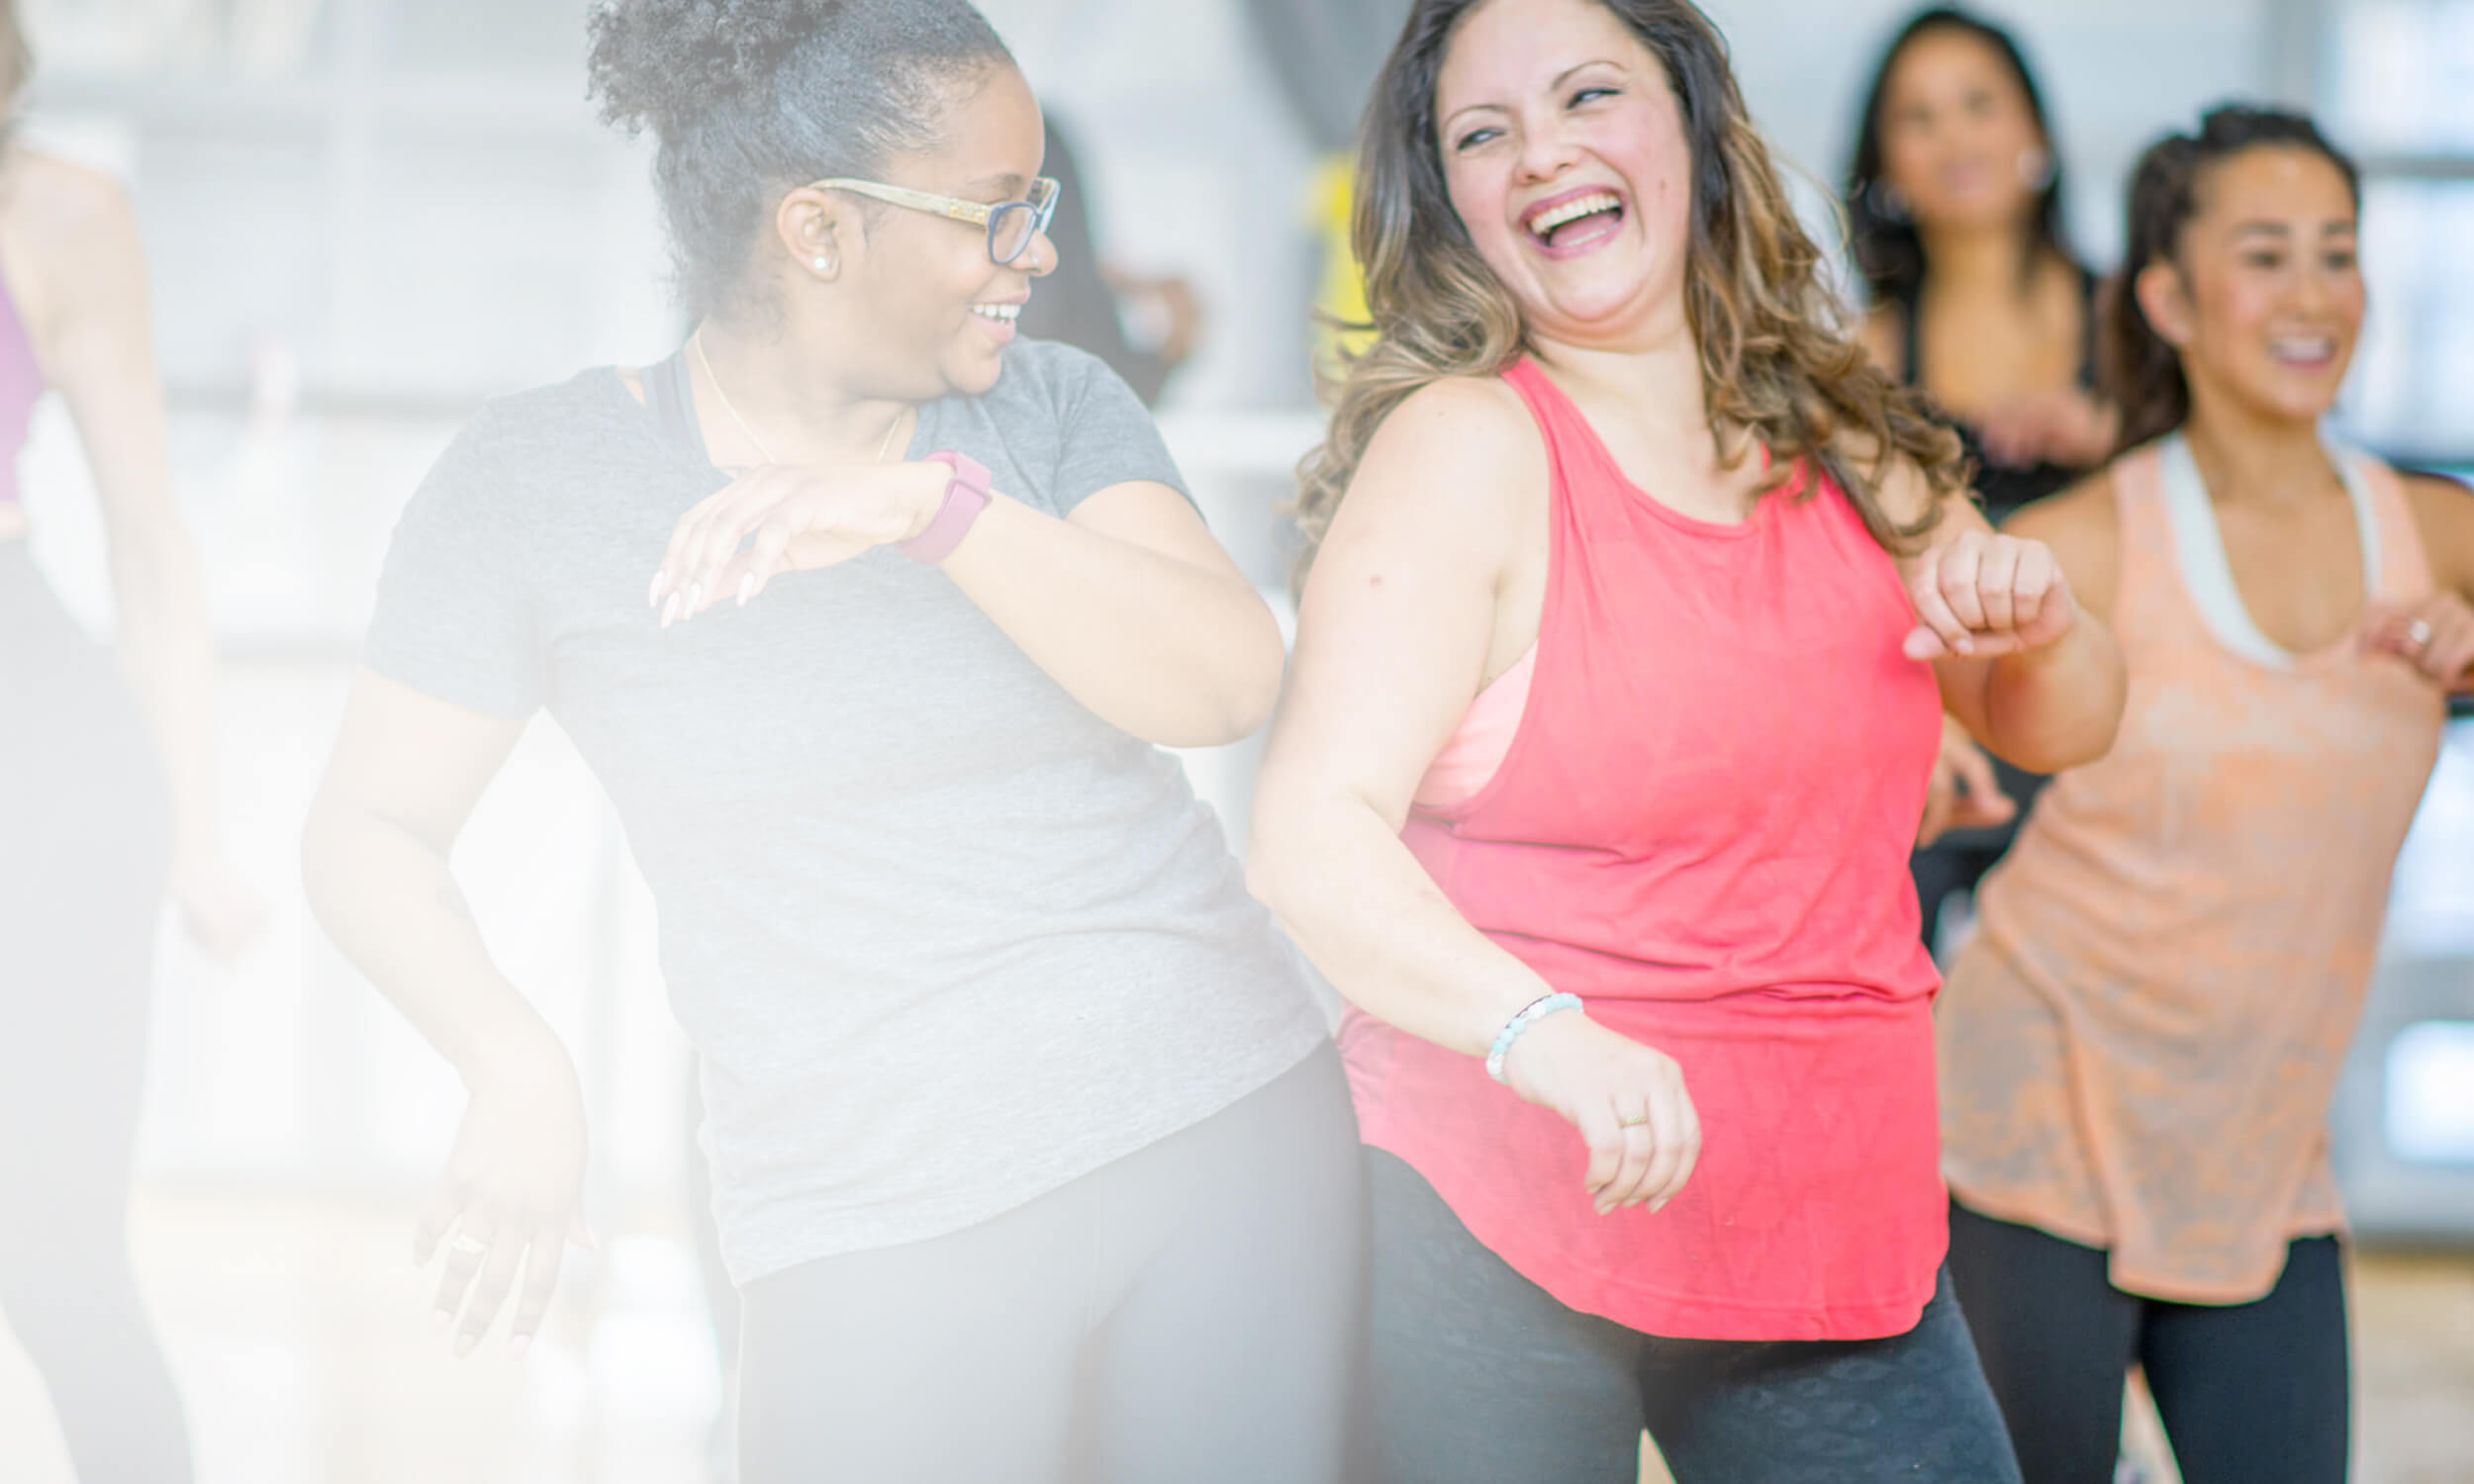 Frauen im Sportoutfit tanzen in einer Gruppe und lachen